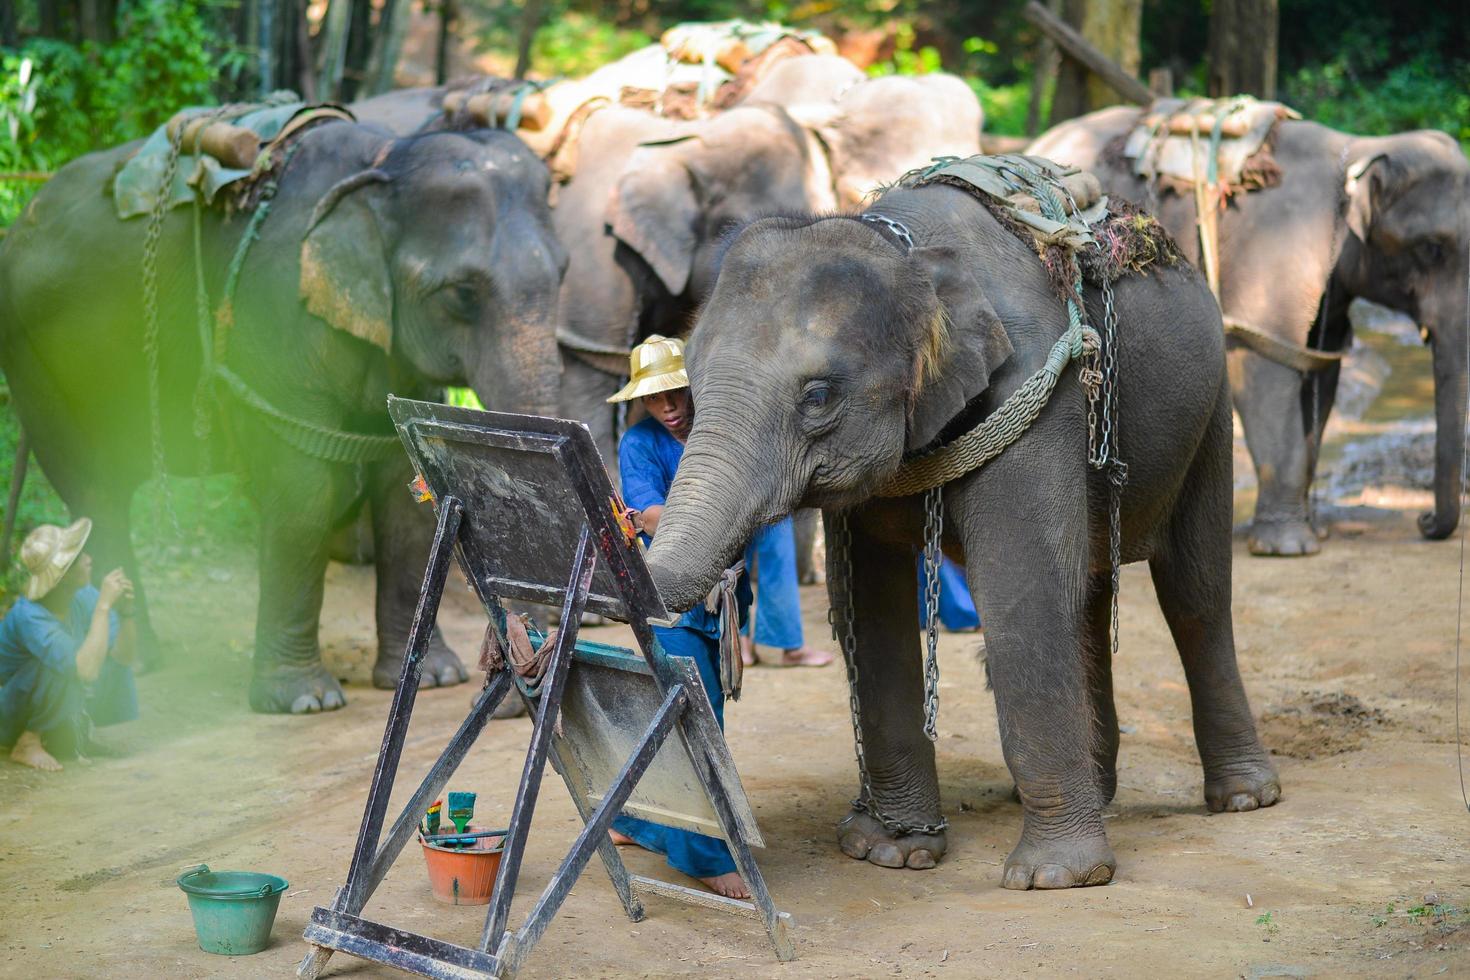 chiang maj, thailand, okt 2014, elefant är målning en bild på elefant läger. chiang maj, thailand på oktober 15, 2014. foto